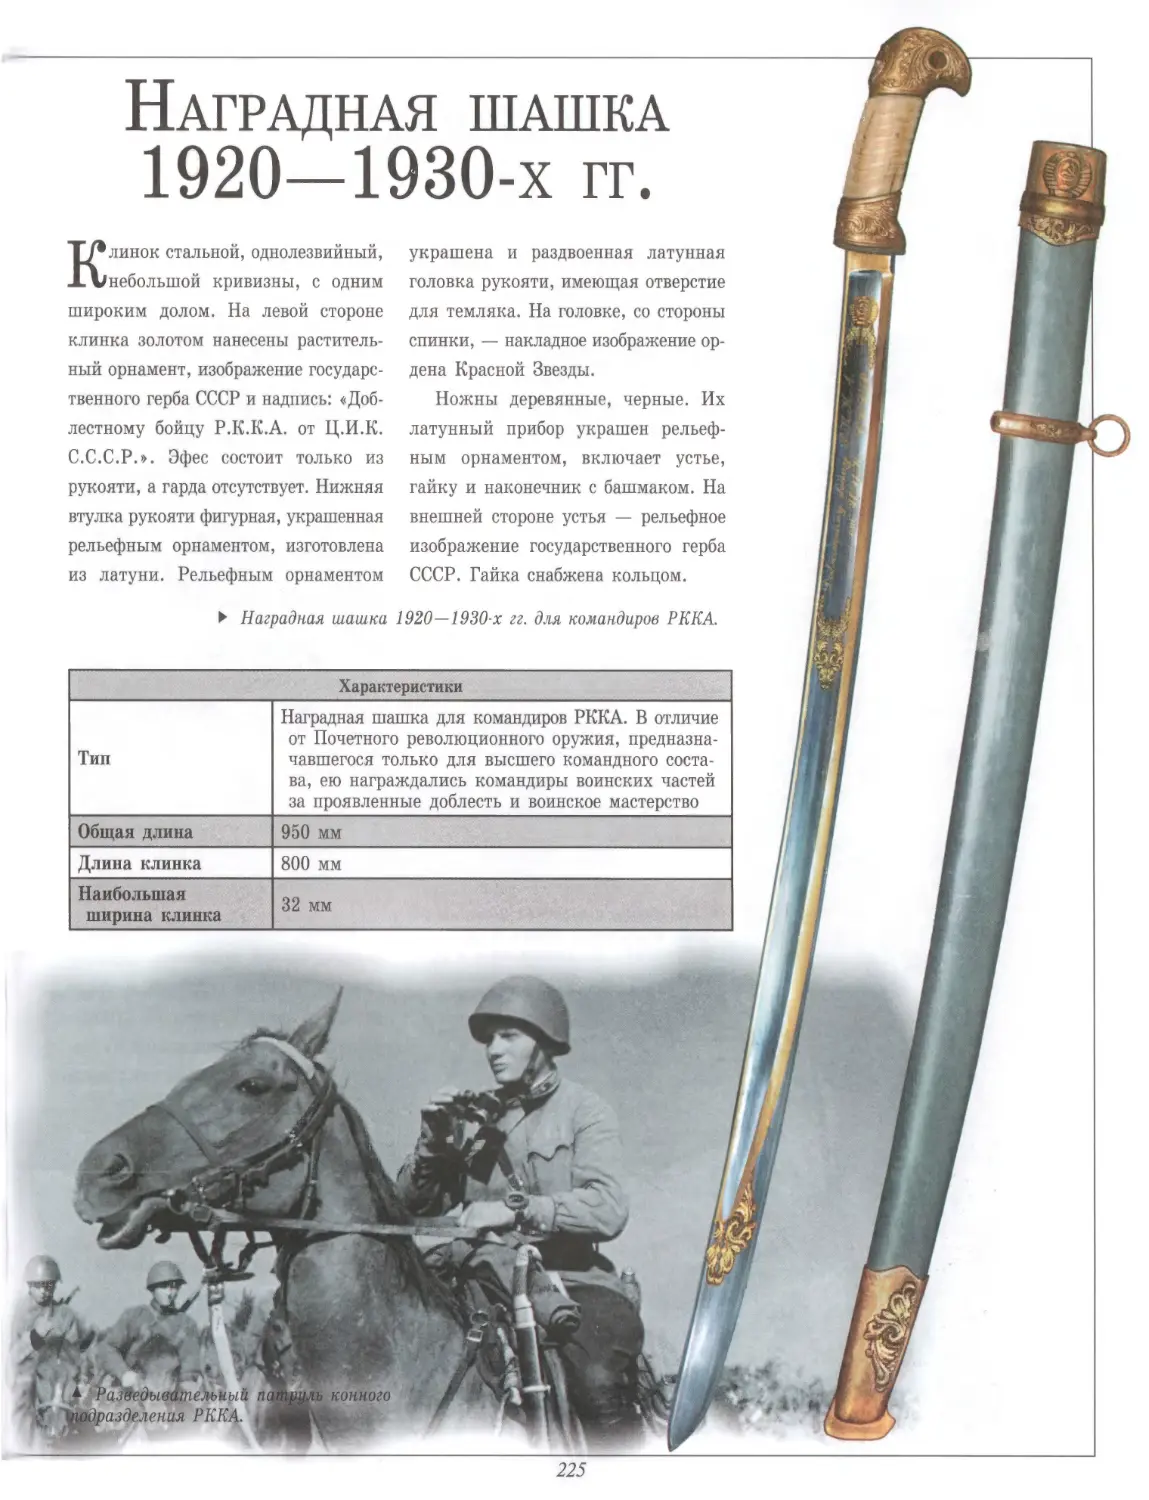 Наградная шашка 1920—1930-х гг.